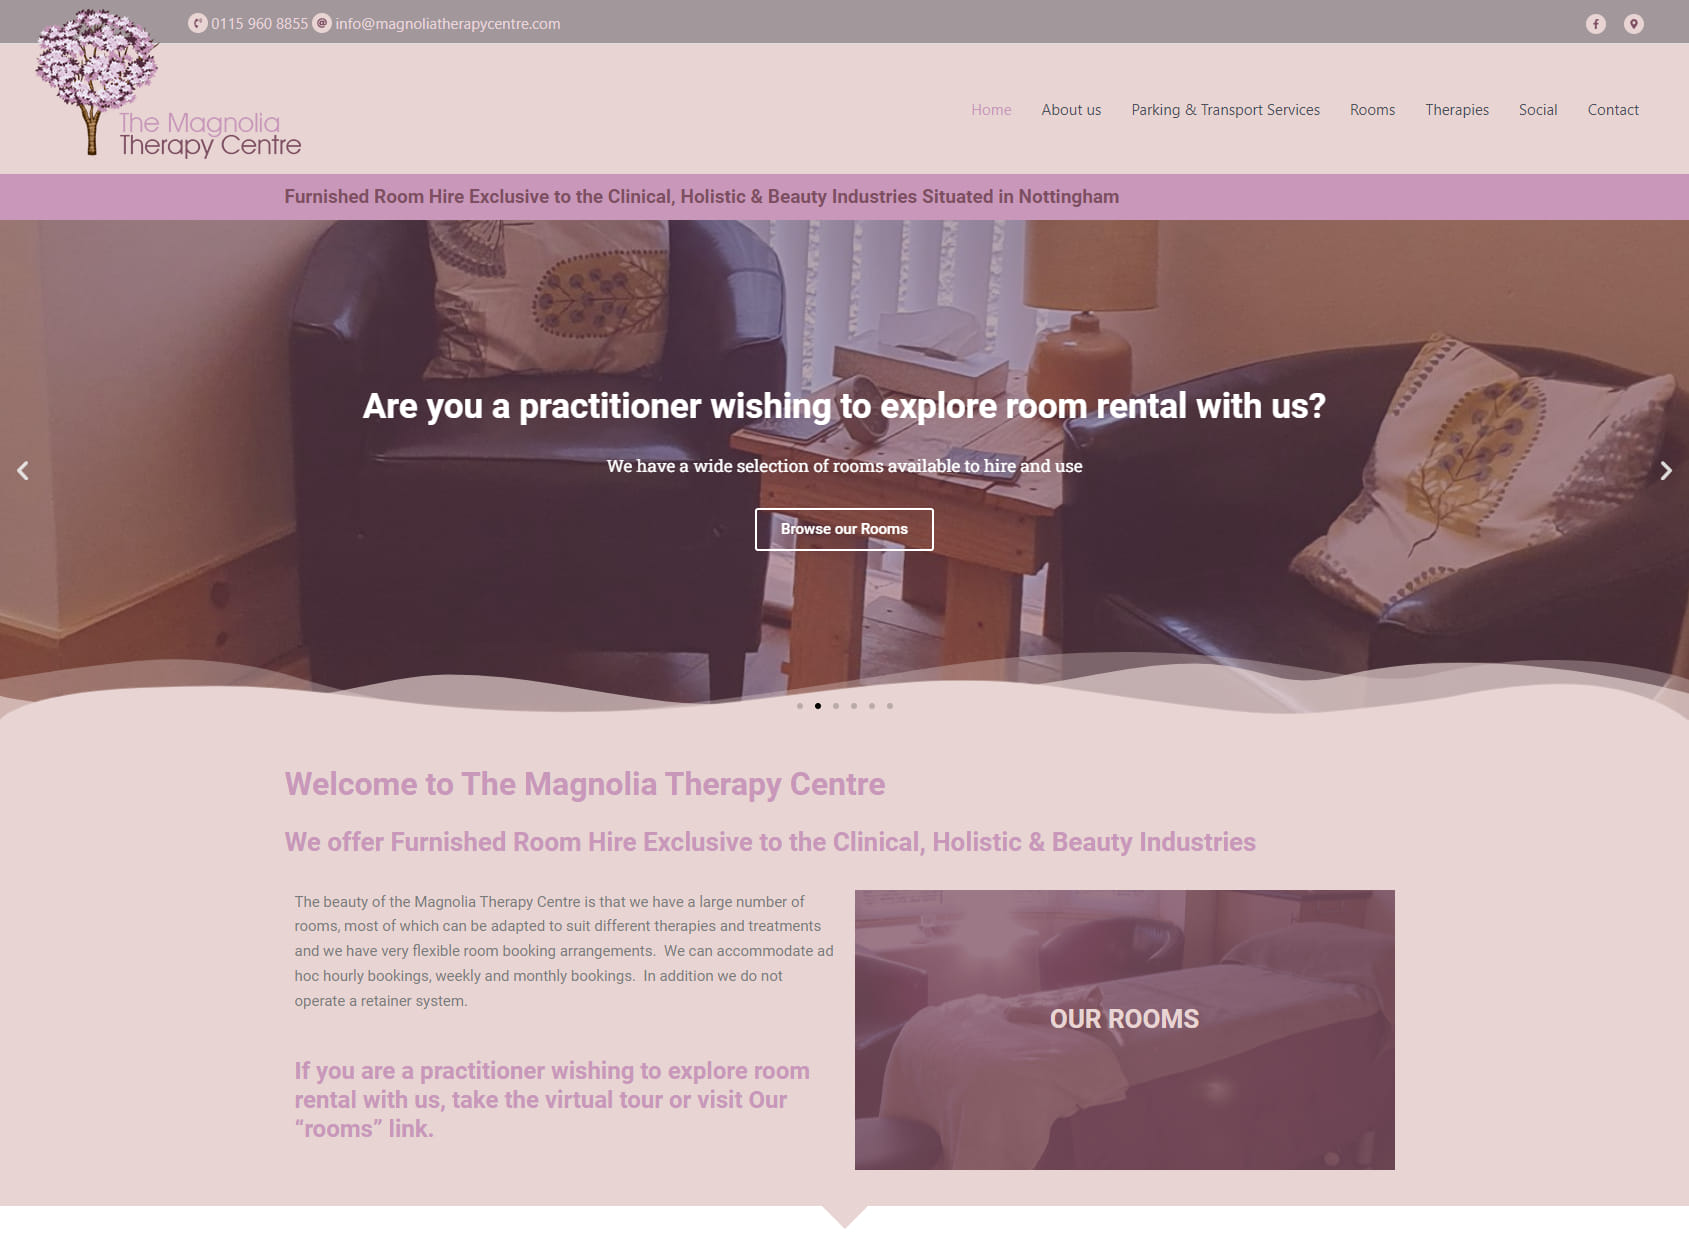 The Magnolia Therapy Centre